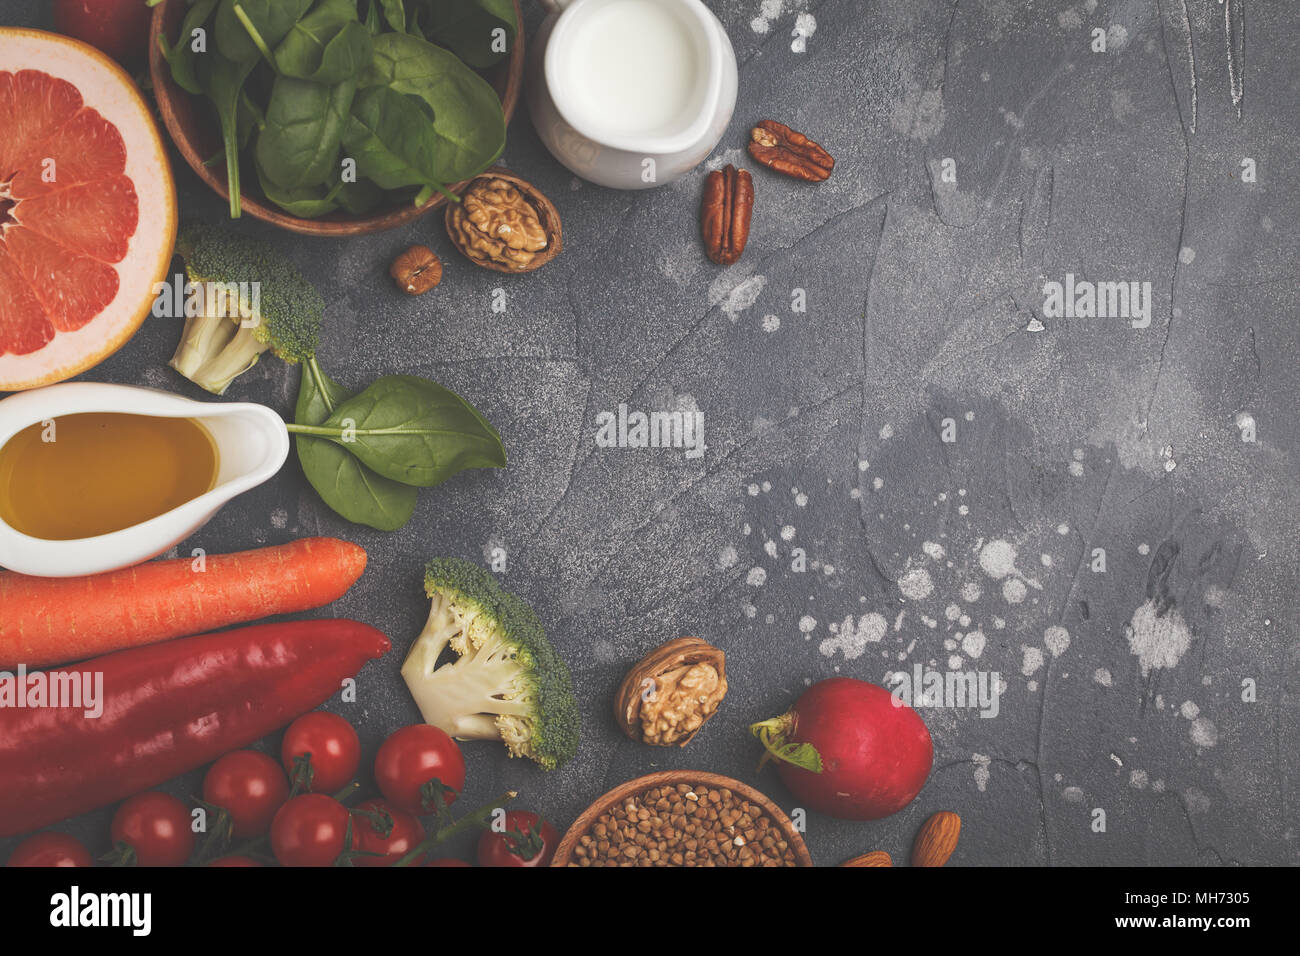 Fondo de alimentos sanos, productos de dieta alcalina de moda: frutas, verduras, cereales, nueces, aceite, fondo oscuro Foto de stock